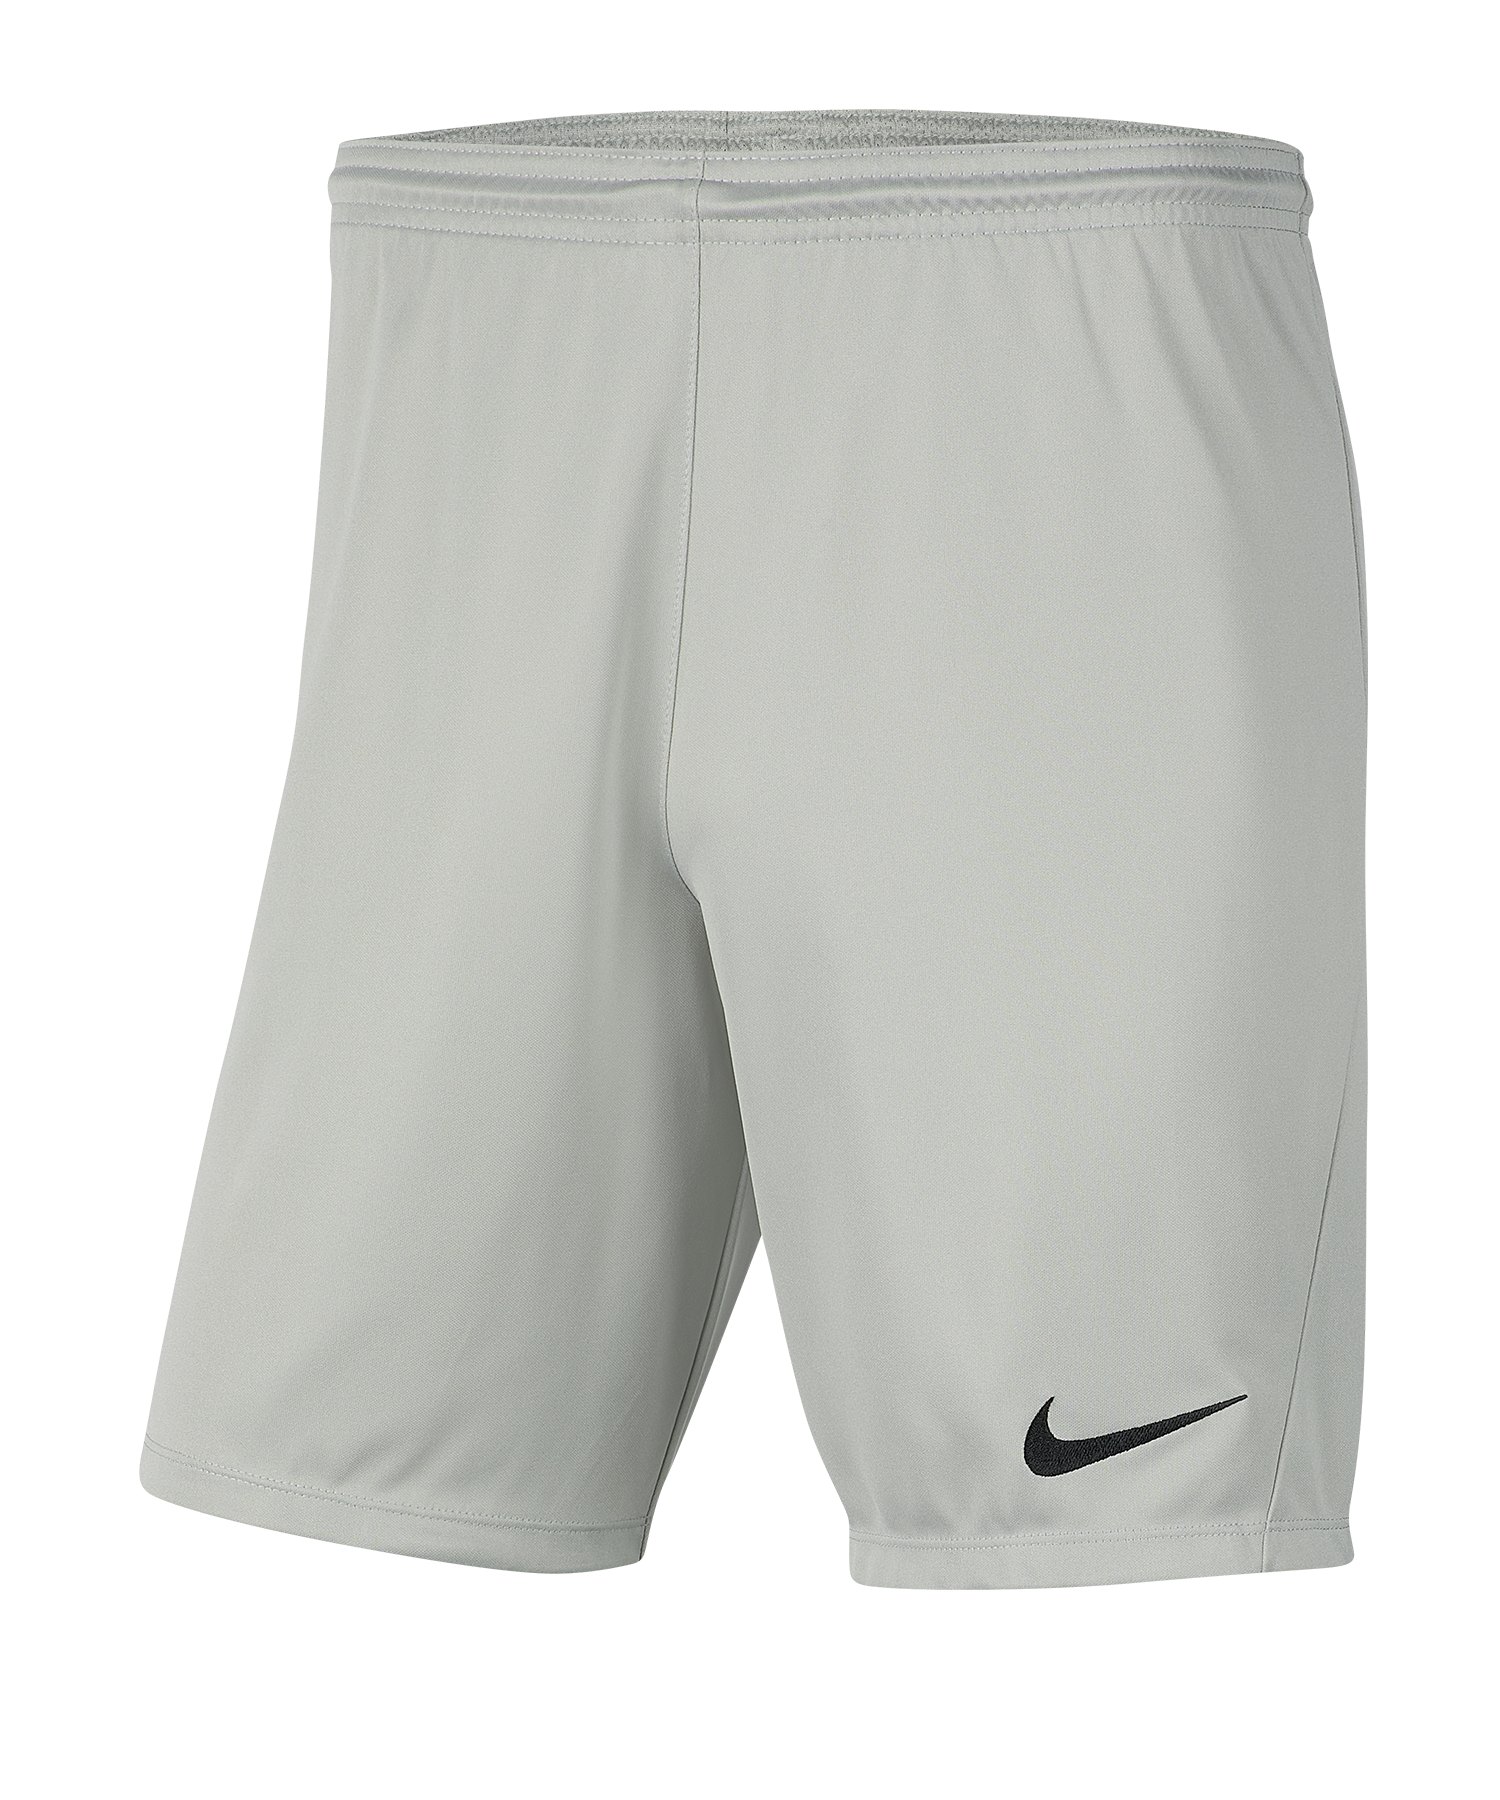 Nike Park III Short Grau F017 - grau